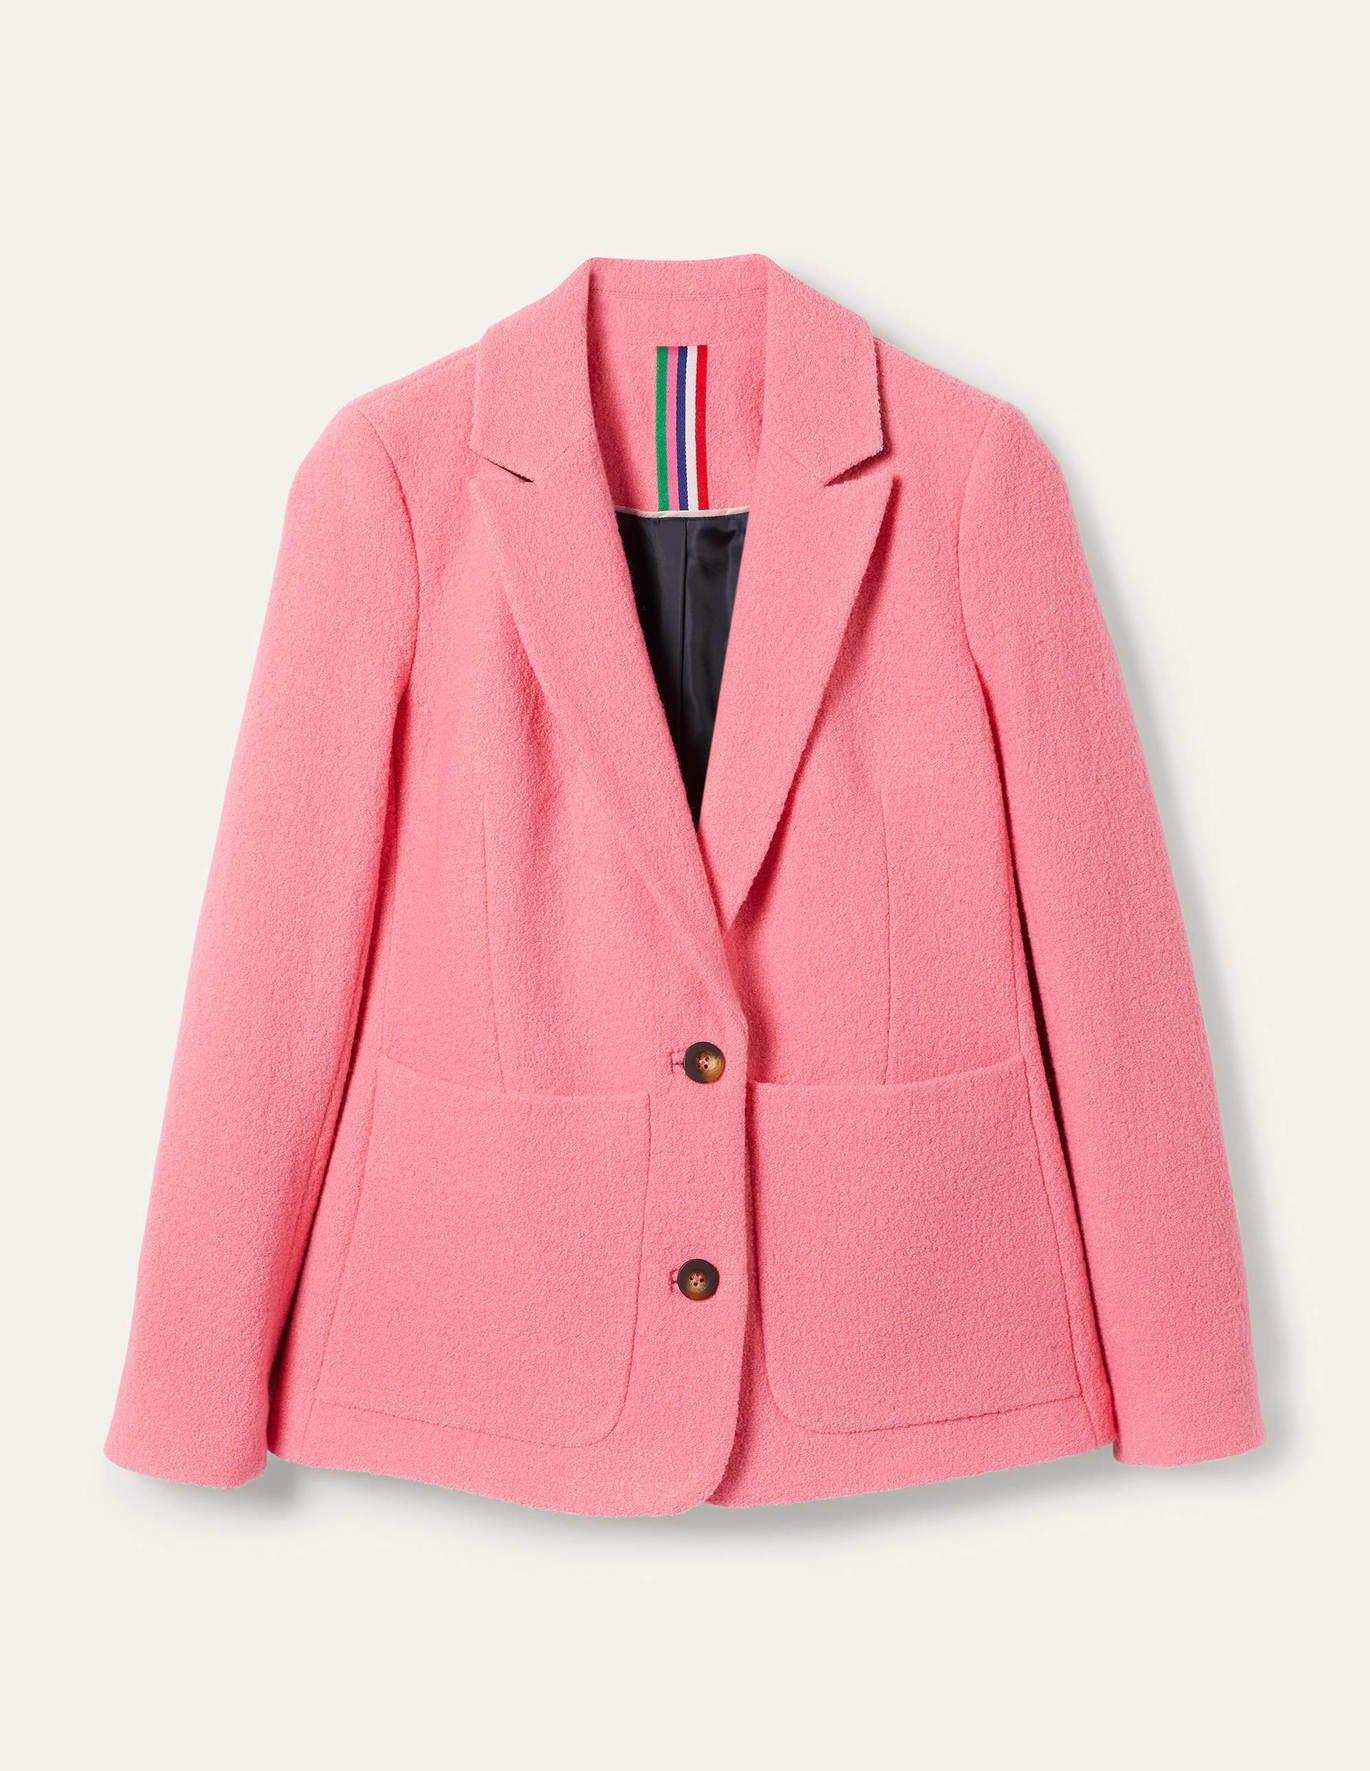 Boden Bella Textured Wool Blazer in Pink | Lyst